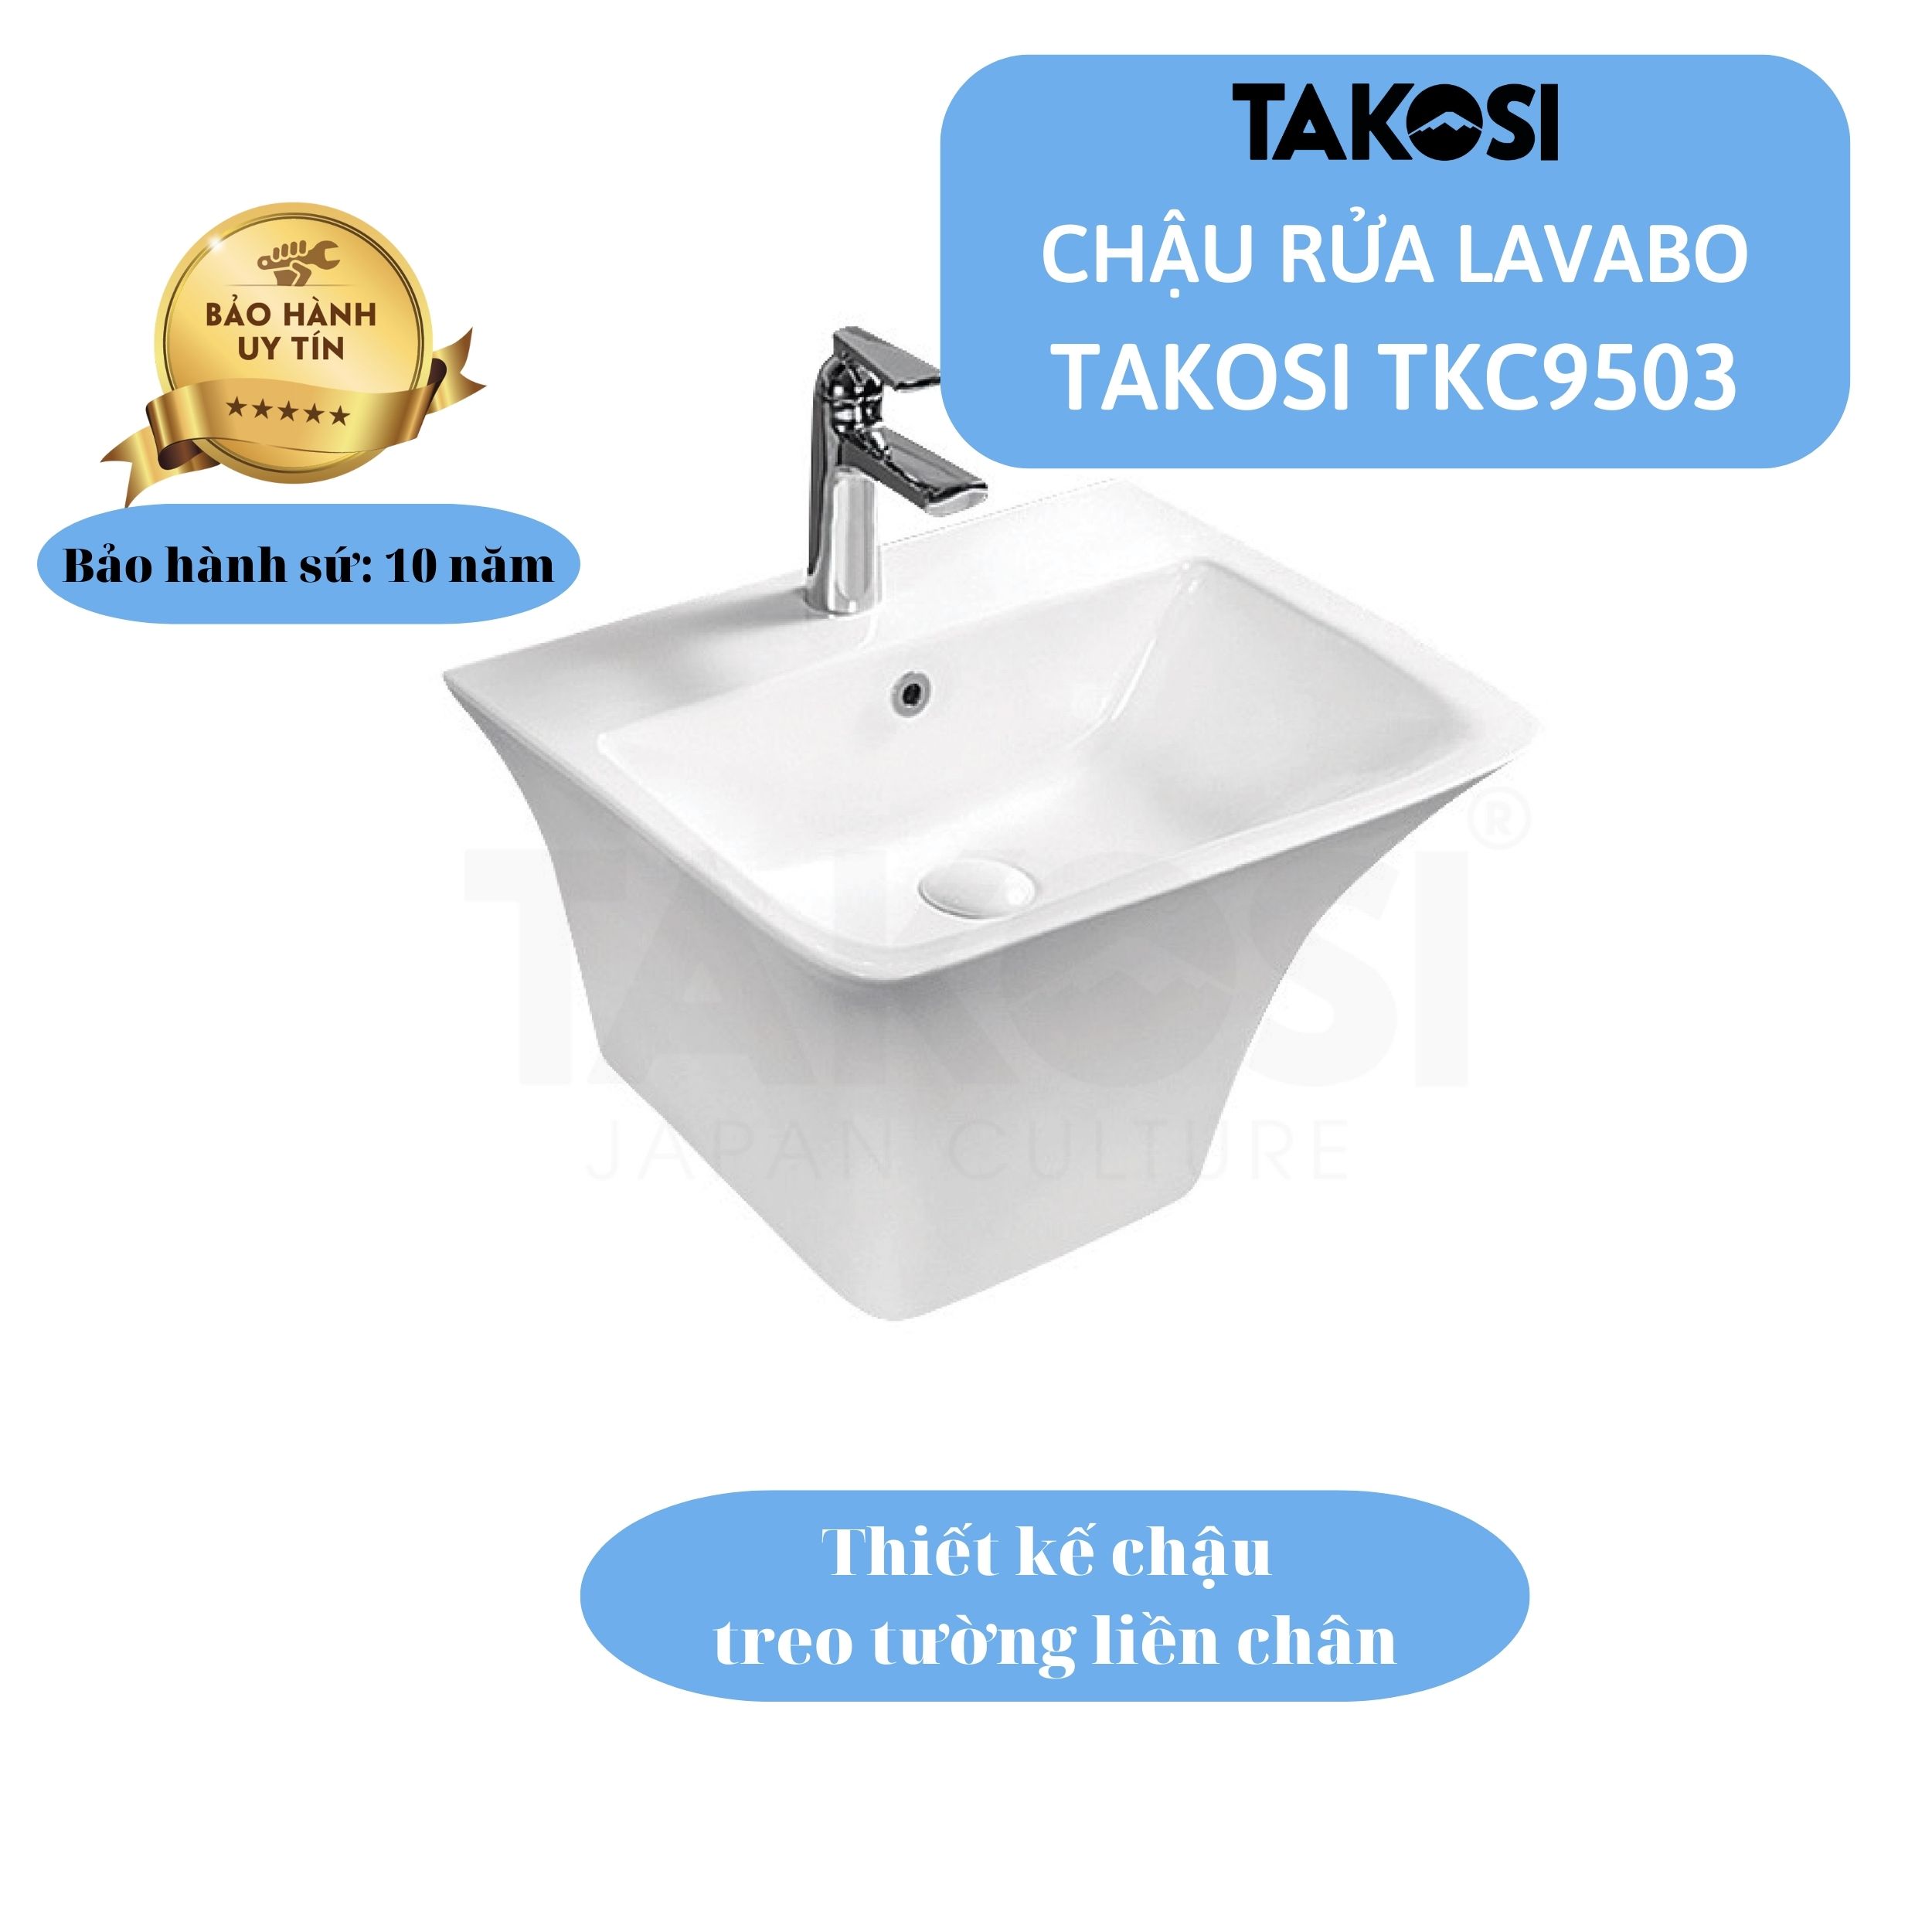 Chậu Lavabo sứ, Chậu rửa mặt phòng tắm Takosi TKC9503 Treo Tường Liền Chân dùng gia đình dùng khách sạn - Hàng chính hãng bảo hành 10 năm